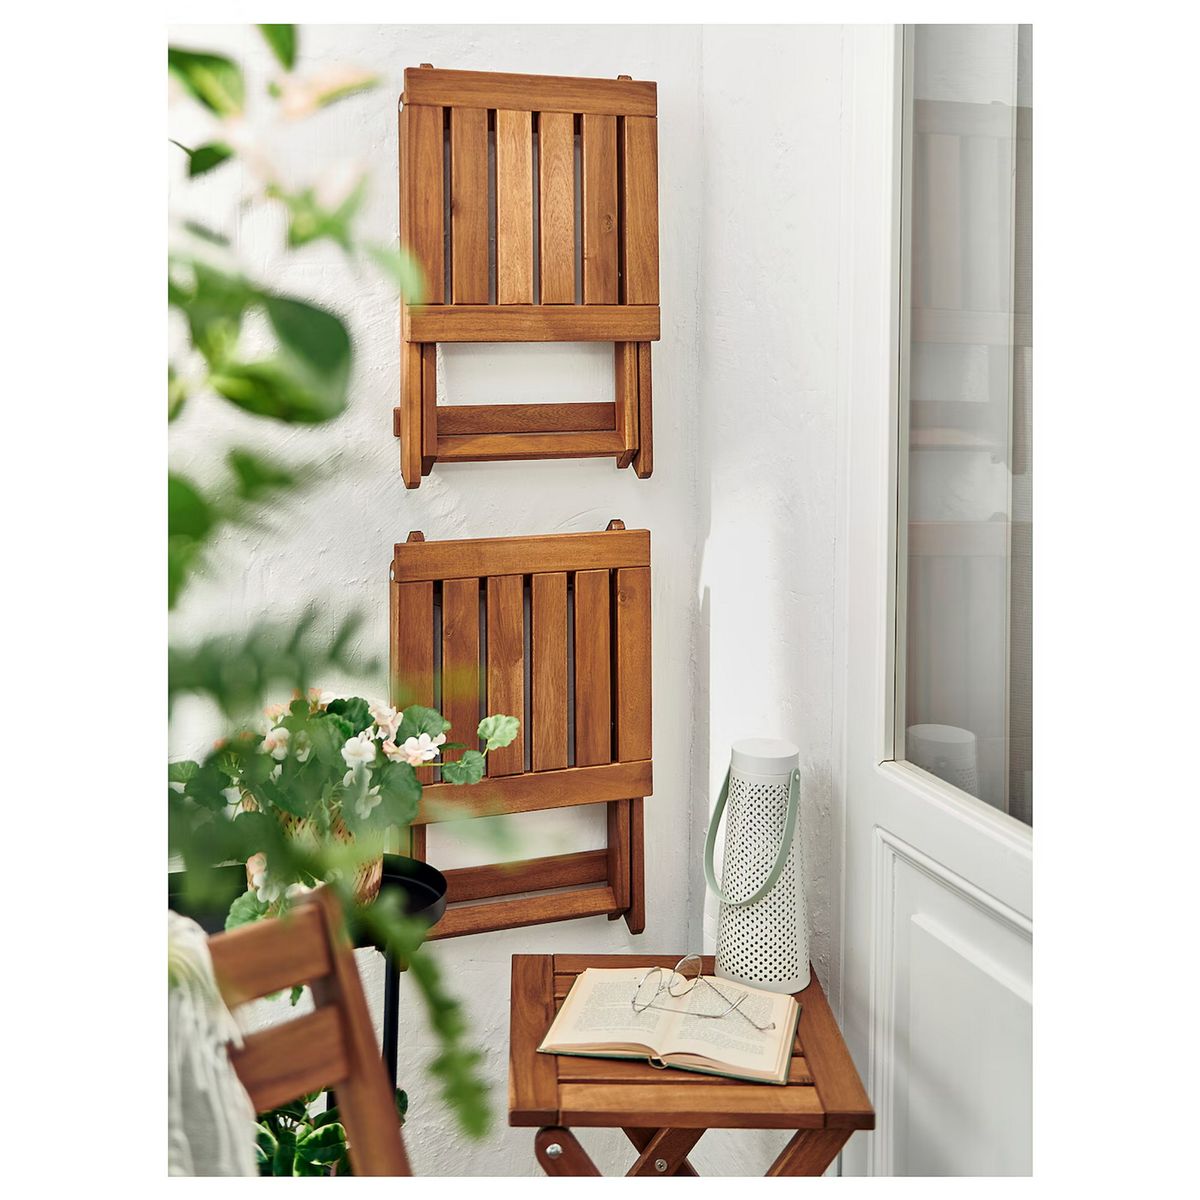 este asiento de ikea por menos de 20 € es la solución perfecta para decorar con estilo terrazas pequeñas